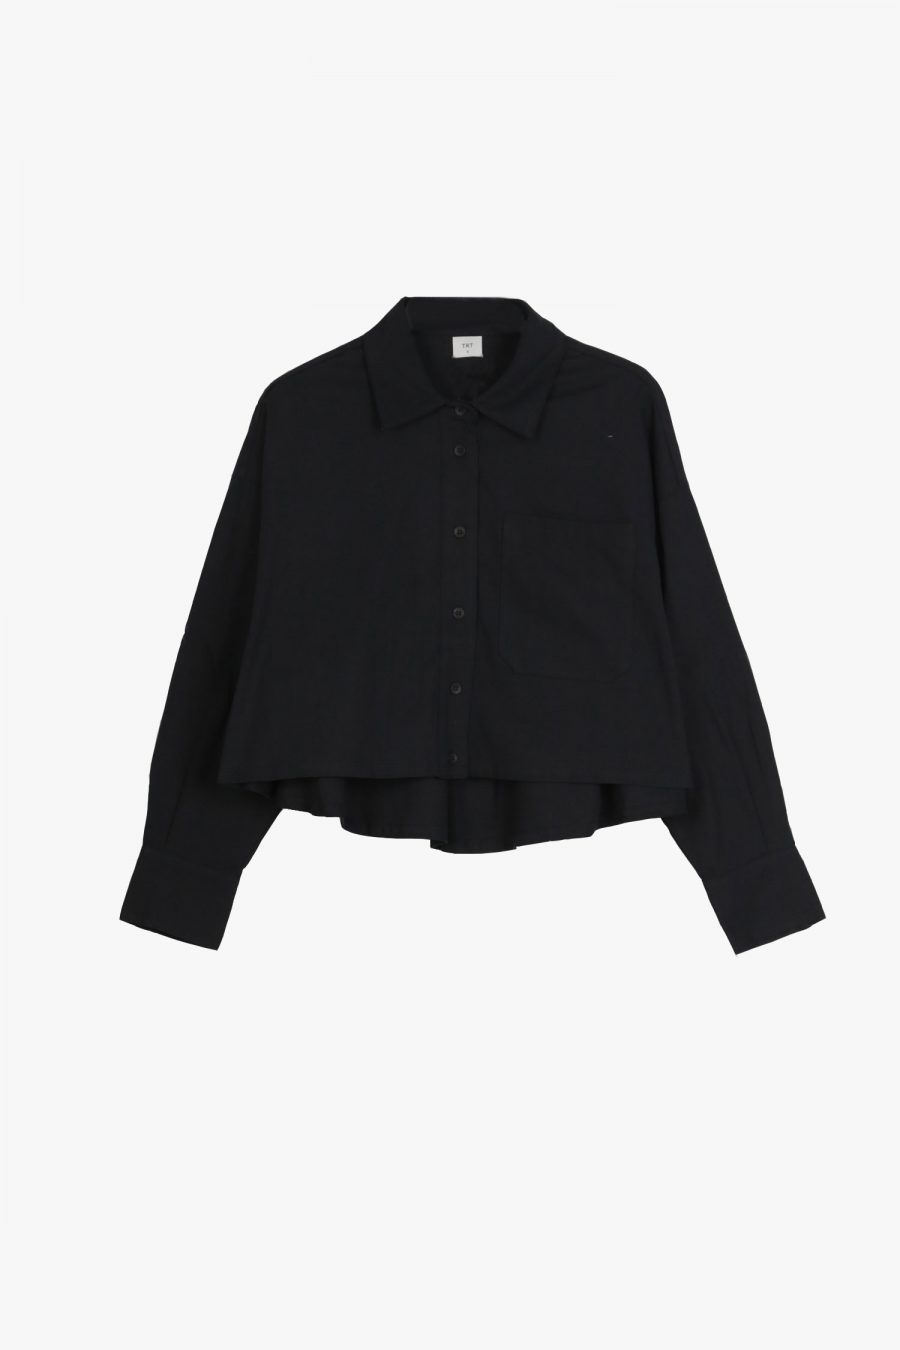 CBL000321X BLACK Cotton Button Up Shirt Front